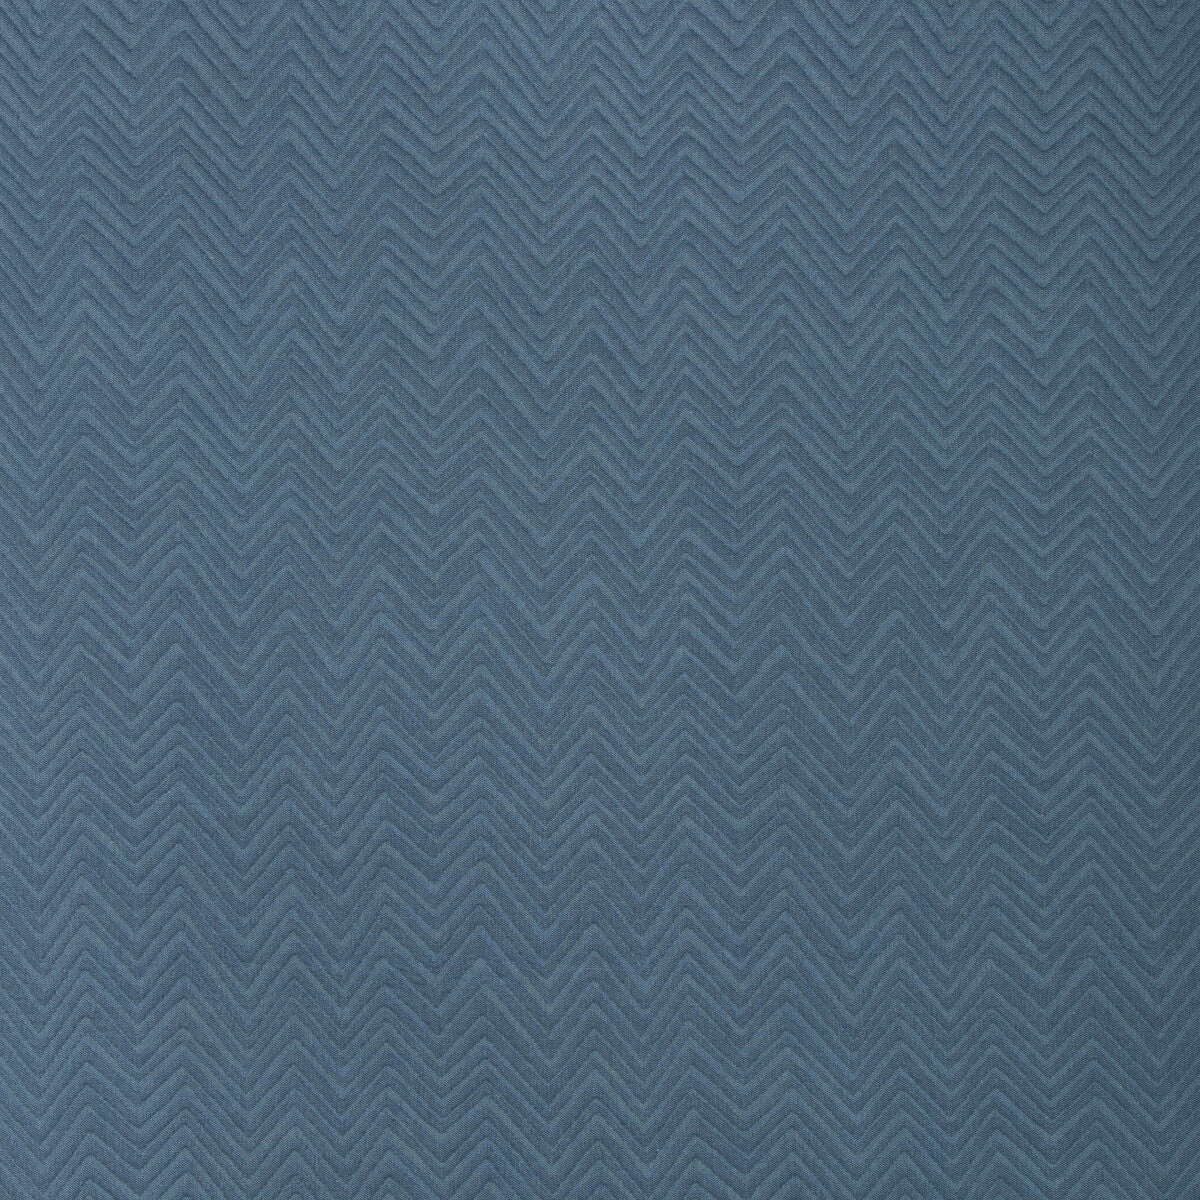 Kravet Design fabric in 35631-5 color - pattern 35631.5.0 - by Kravet Design